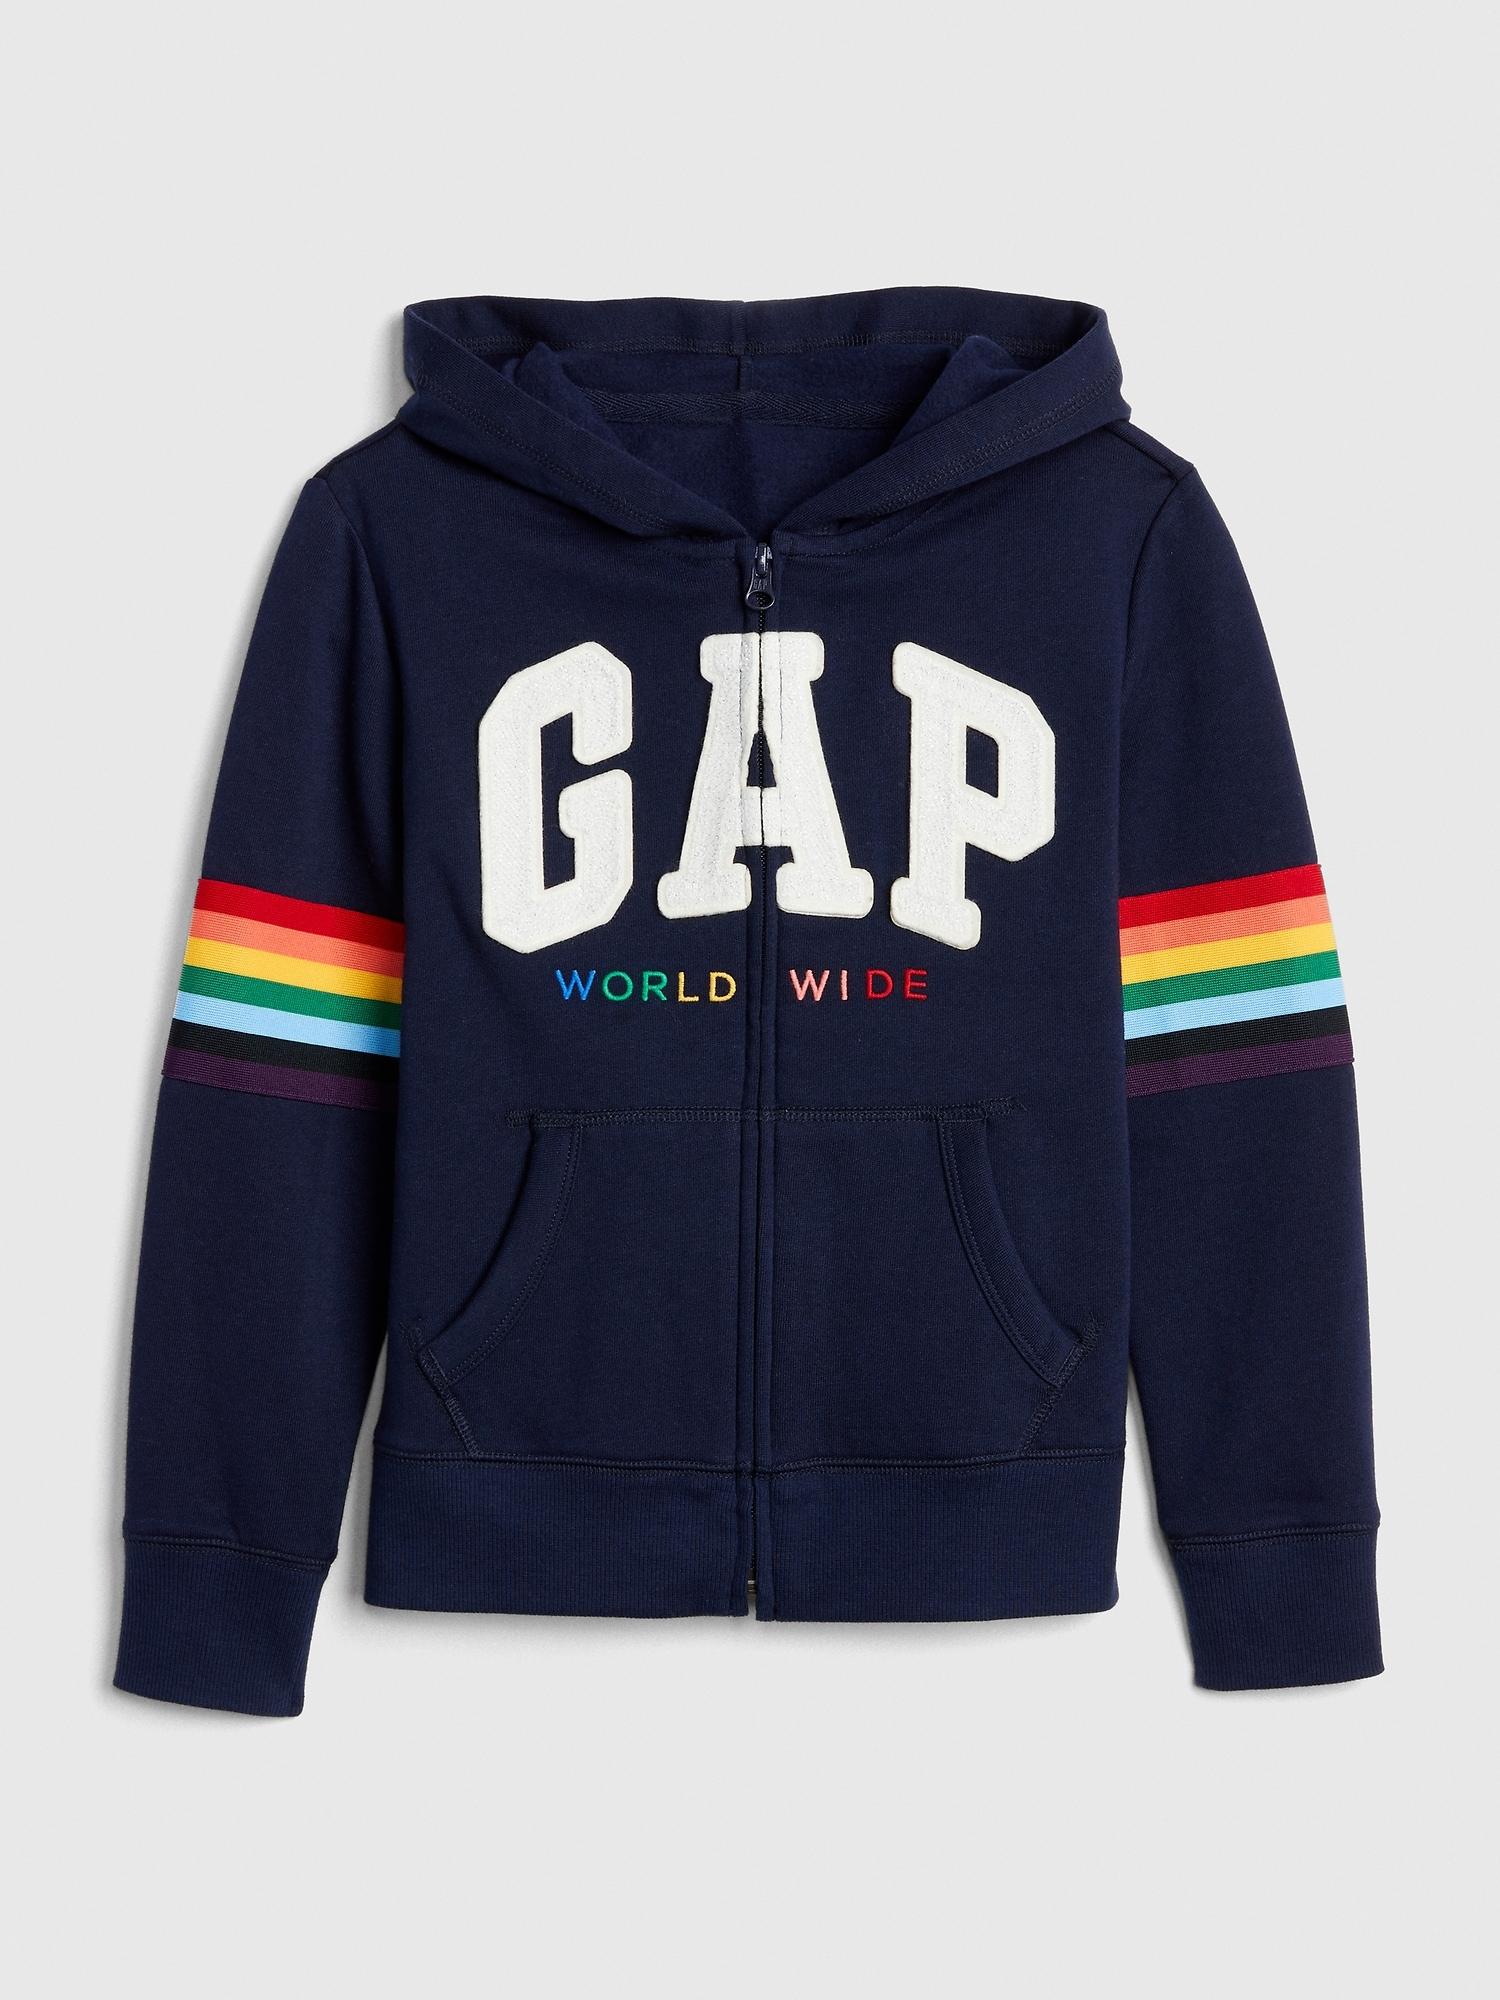 gap rainbow jacket